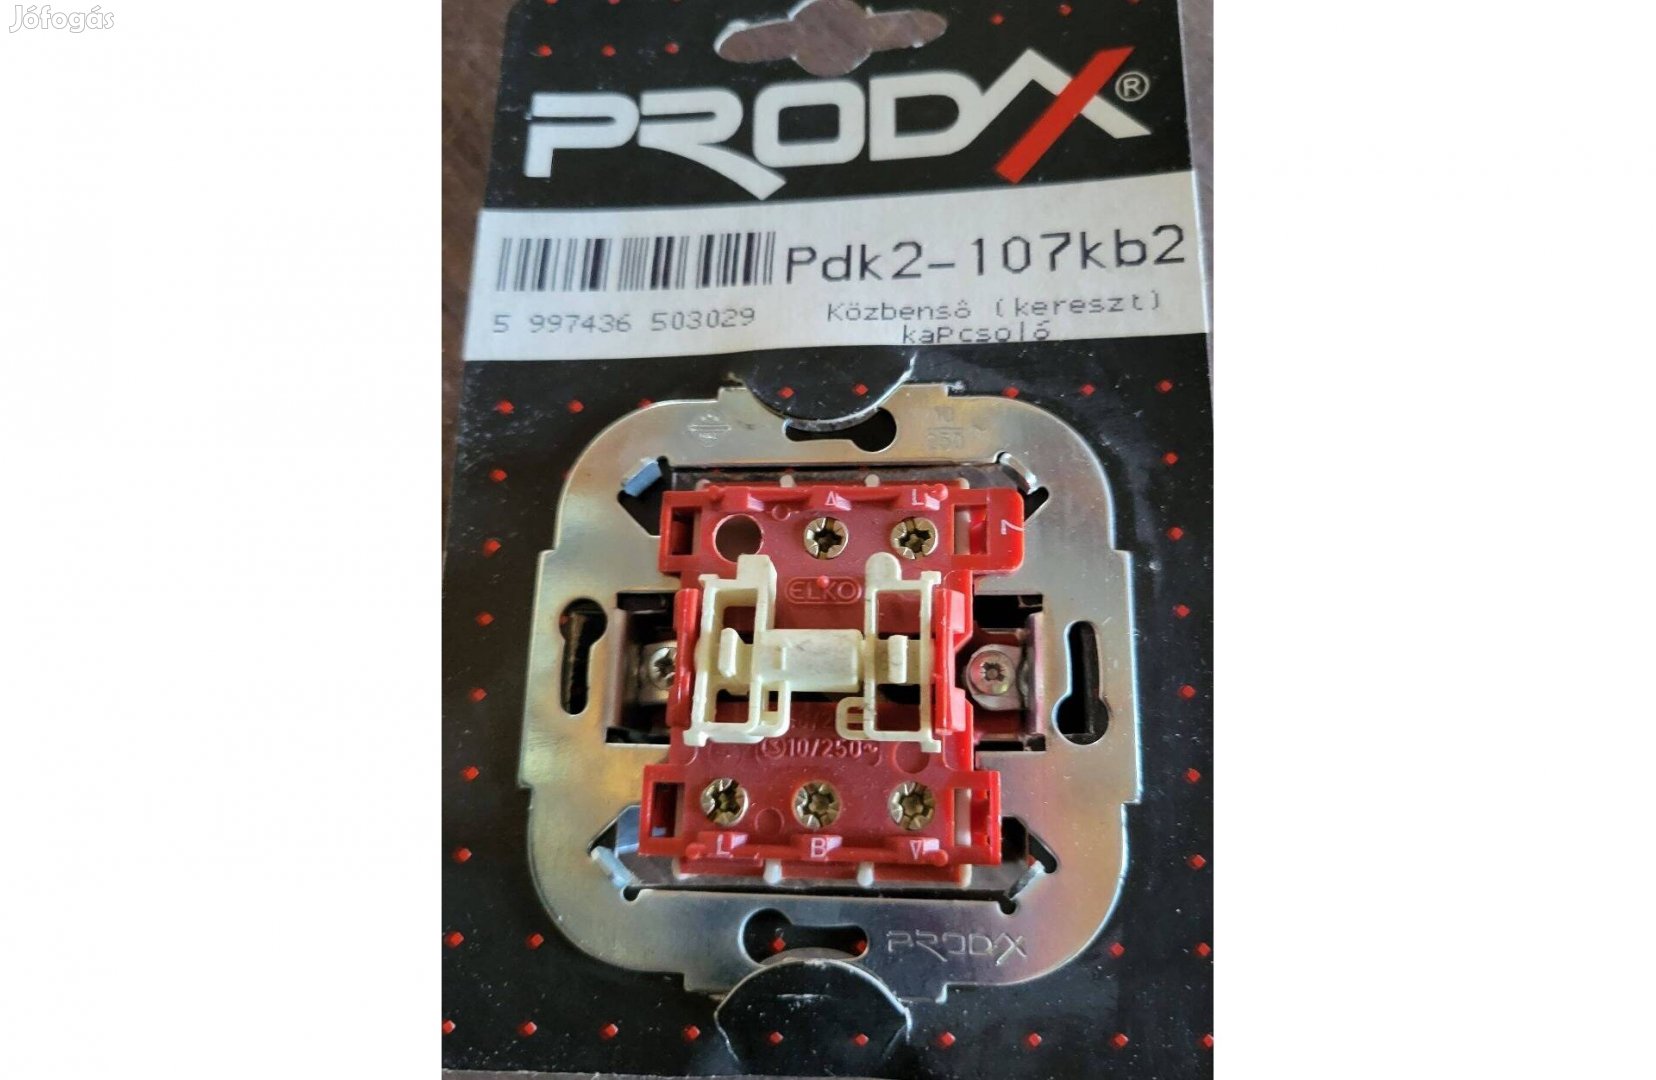 Prodax Pdk2 106-os,105, 107, 101 es, kapcsoló  + billenőkapcsolók.